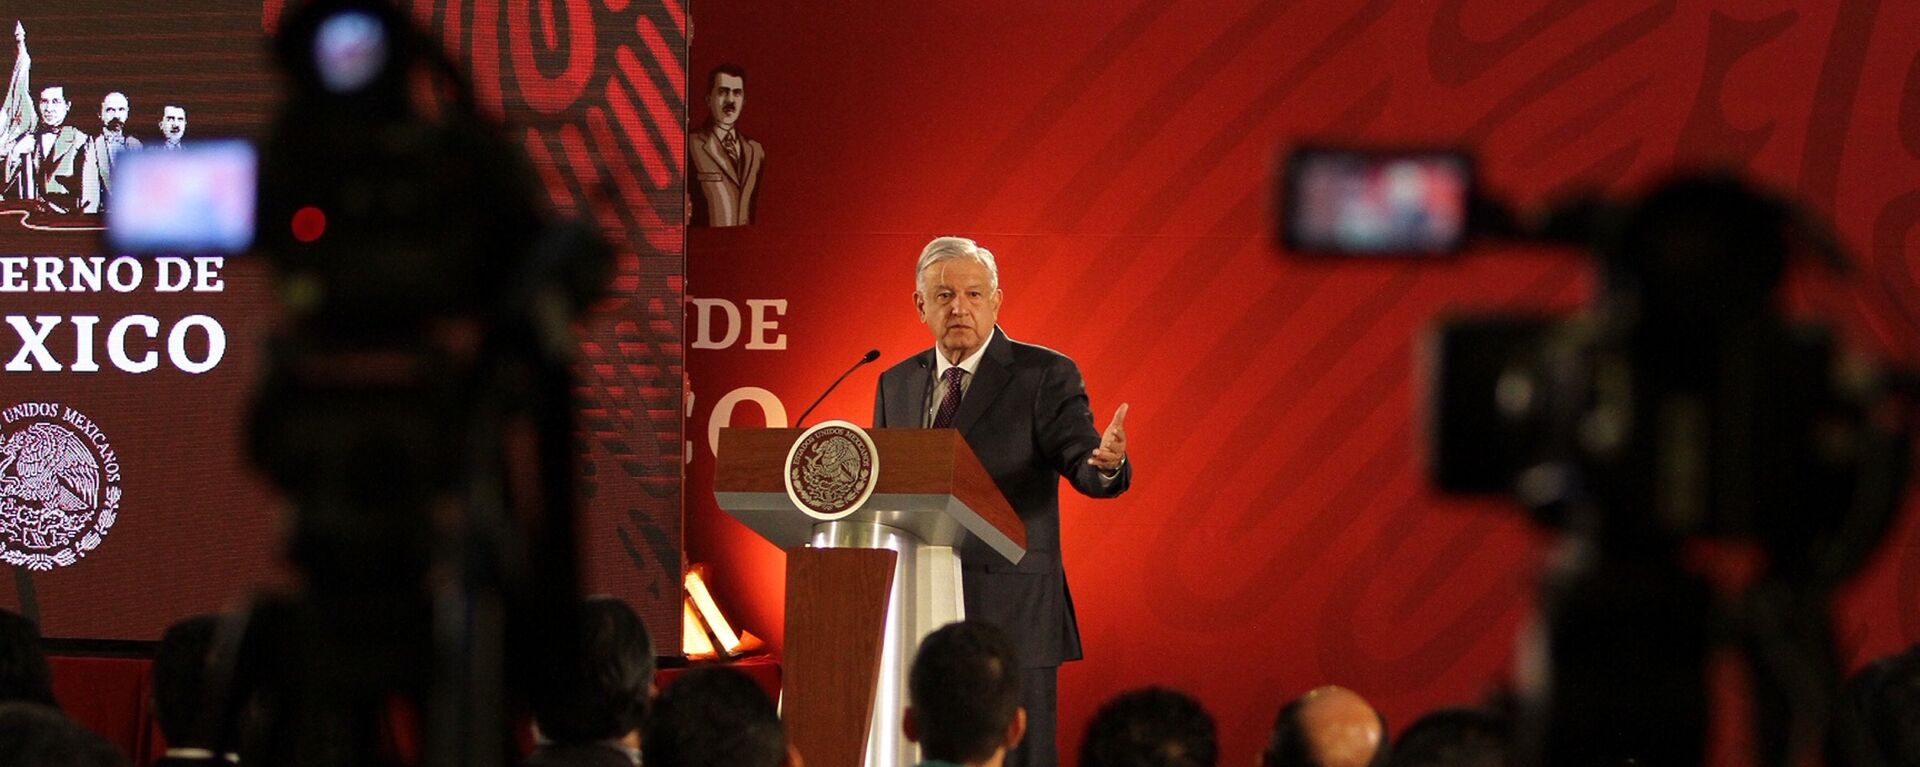 Andrés Manuel López Obrador, presidente de México - Sputnik Mundo, 1920, 26.08.2021